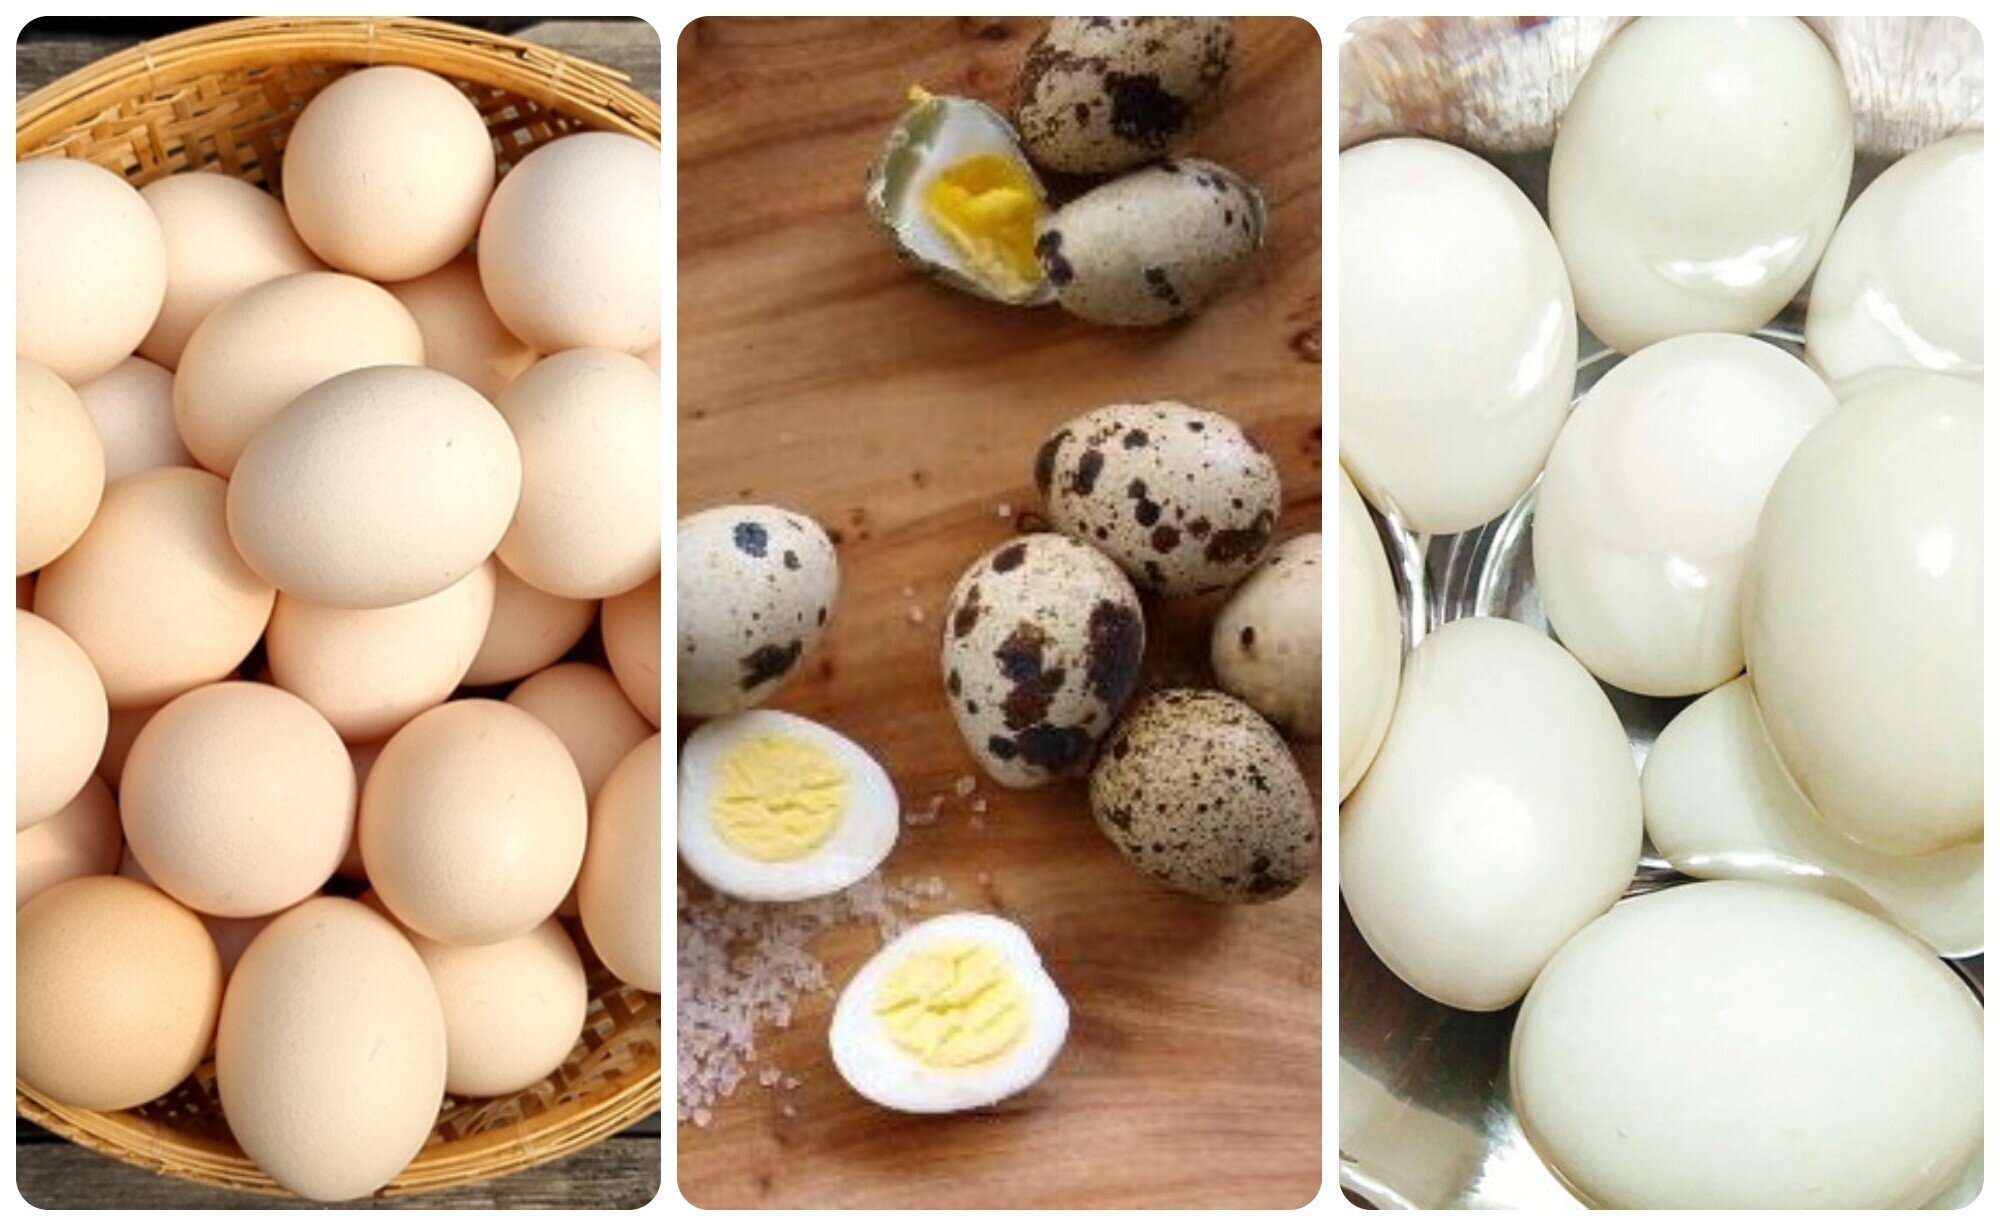 Trứng gà, trứng vịt, trứng cút: Ăn trứng nào bổ dưỡng nhất? - 1